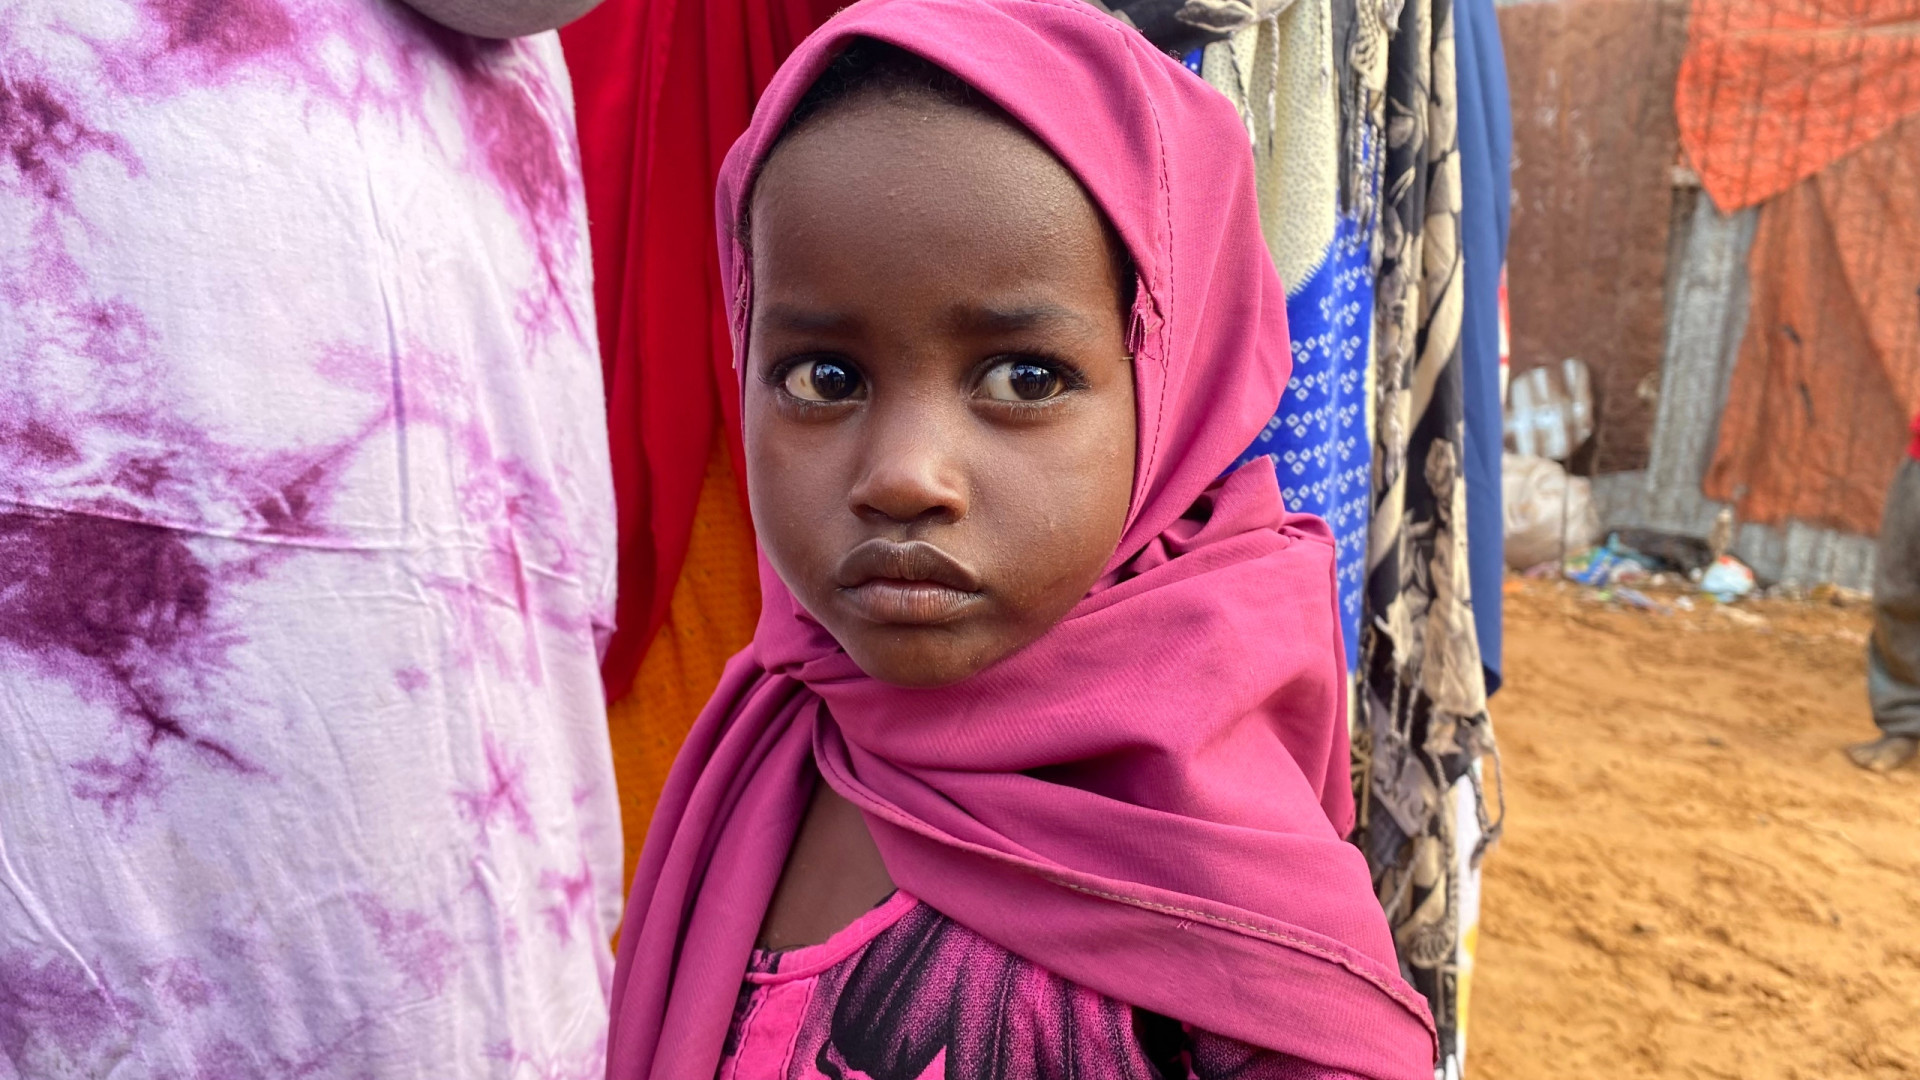 <p>Taux de fécondité moyen par femme : 5,22<br><br>La Somalie a connu plusieurs crises au cours des dernières décennies, mais ses problèmes démographiques à long terme sont toujours aussi importants.</p><p><a href="https://www.msn.com/fr-fr/community/channel/vid-7xx8mnucu55yw63we9va2gwr7uihbxwc68fxqp25x6tg4ftibpra?cvid=94631541bc0f4f89bfd59158d696ad7e">Suivez-nous et accédez tous les jours à du contenu exclusif</a></p>